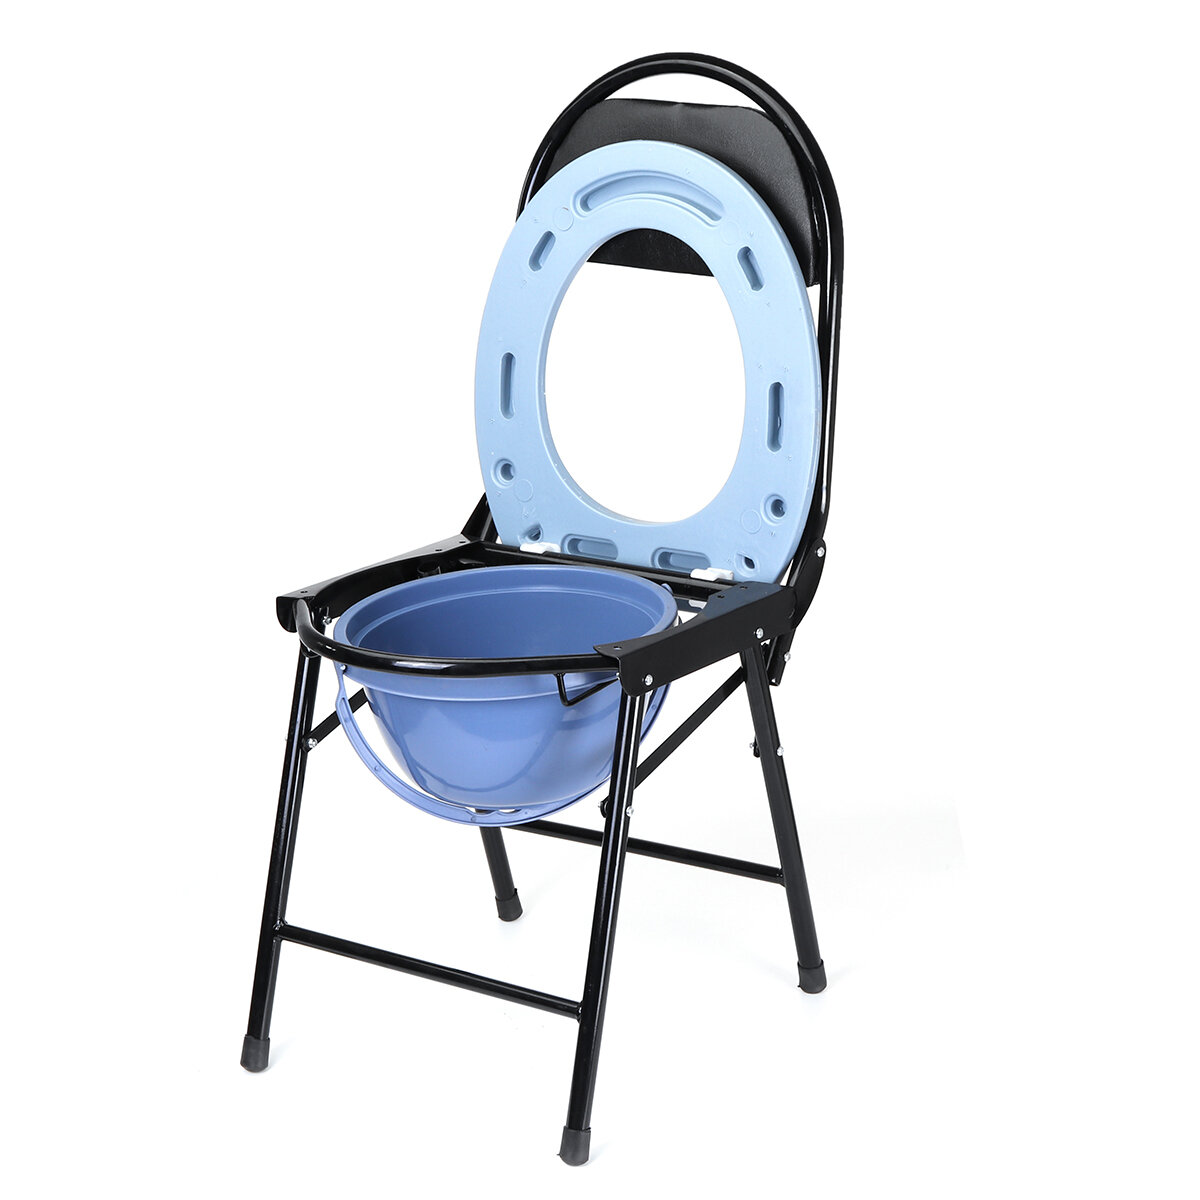 Opvouwbare commode po stoel van staal en plastic voor ouderen en zwangere vrouwen